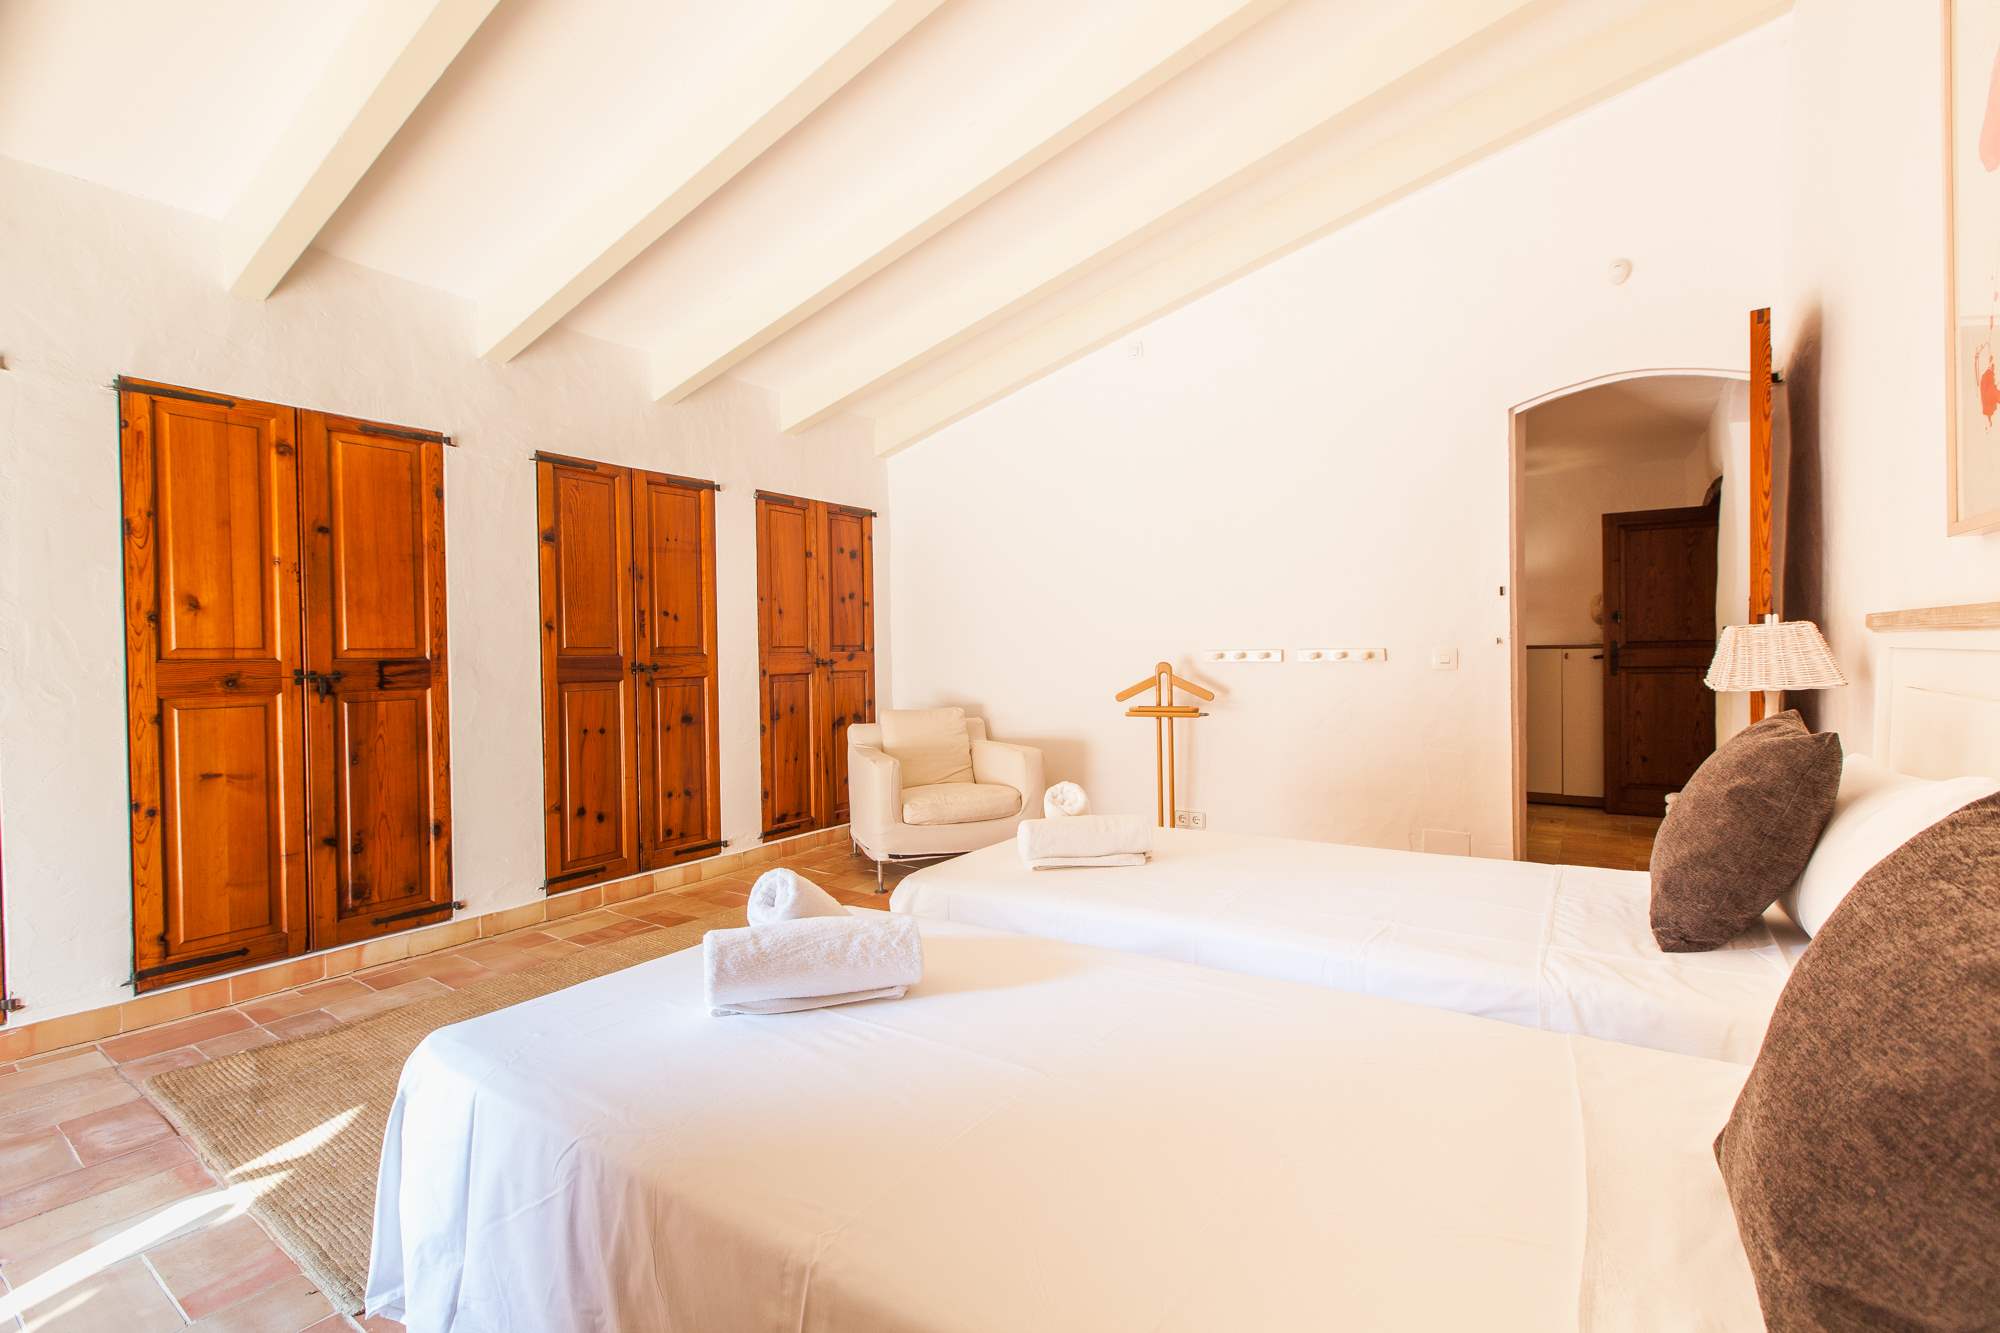 Es Clotal, 4 bedroom, 4 bedroom villa in Pollensa & Puerto Pollensa, Majorca Photo #18